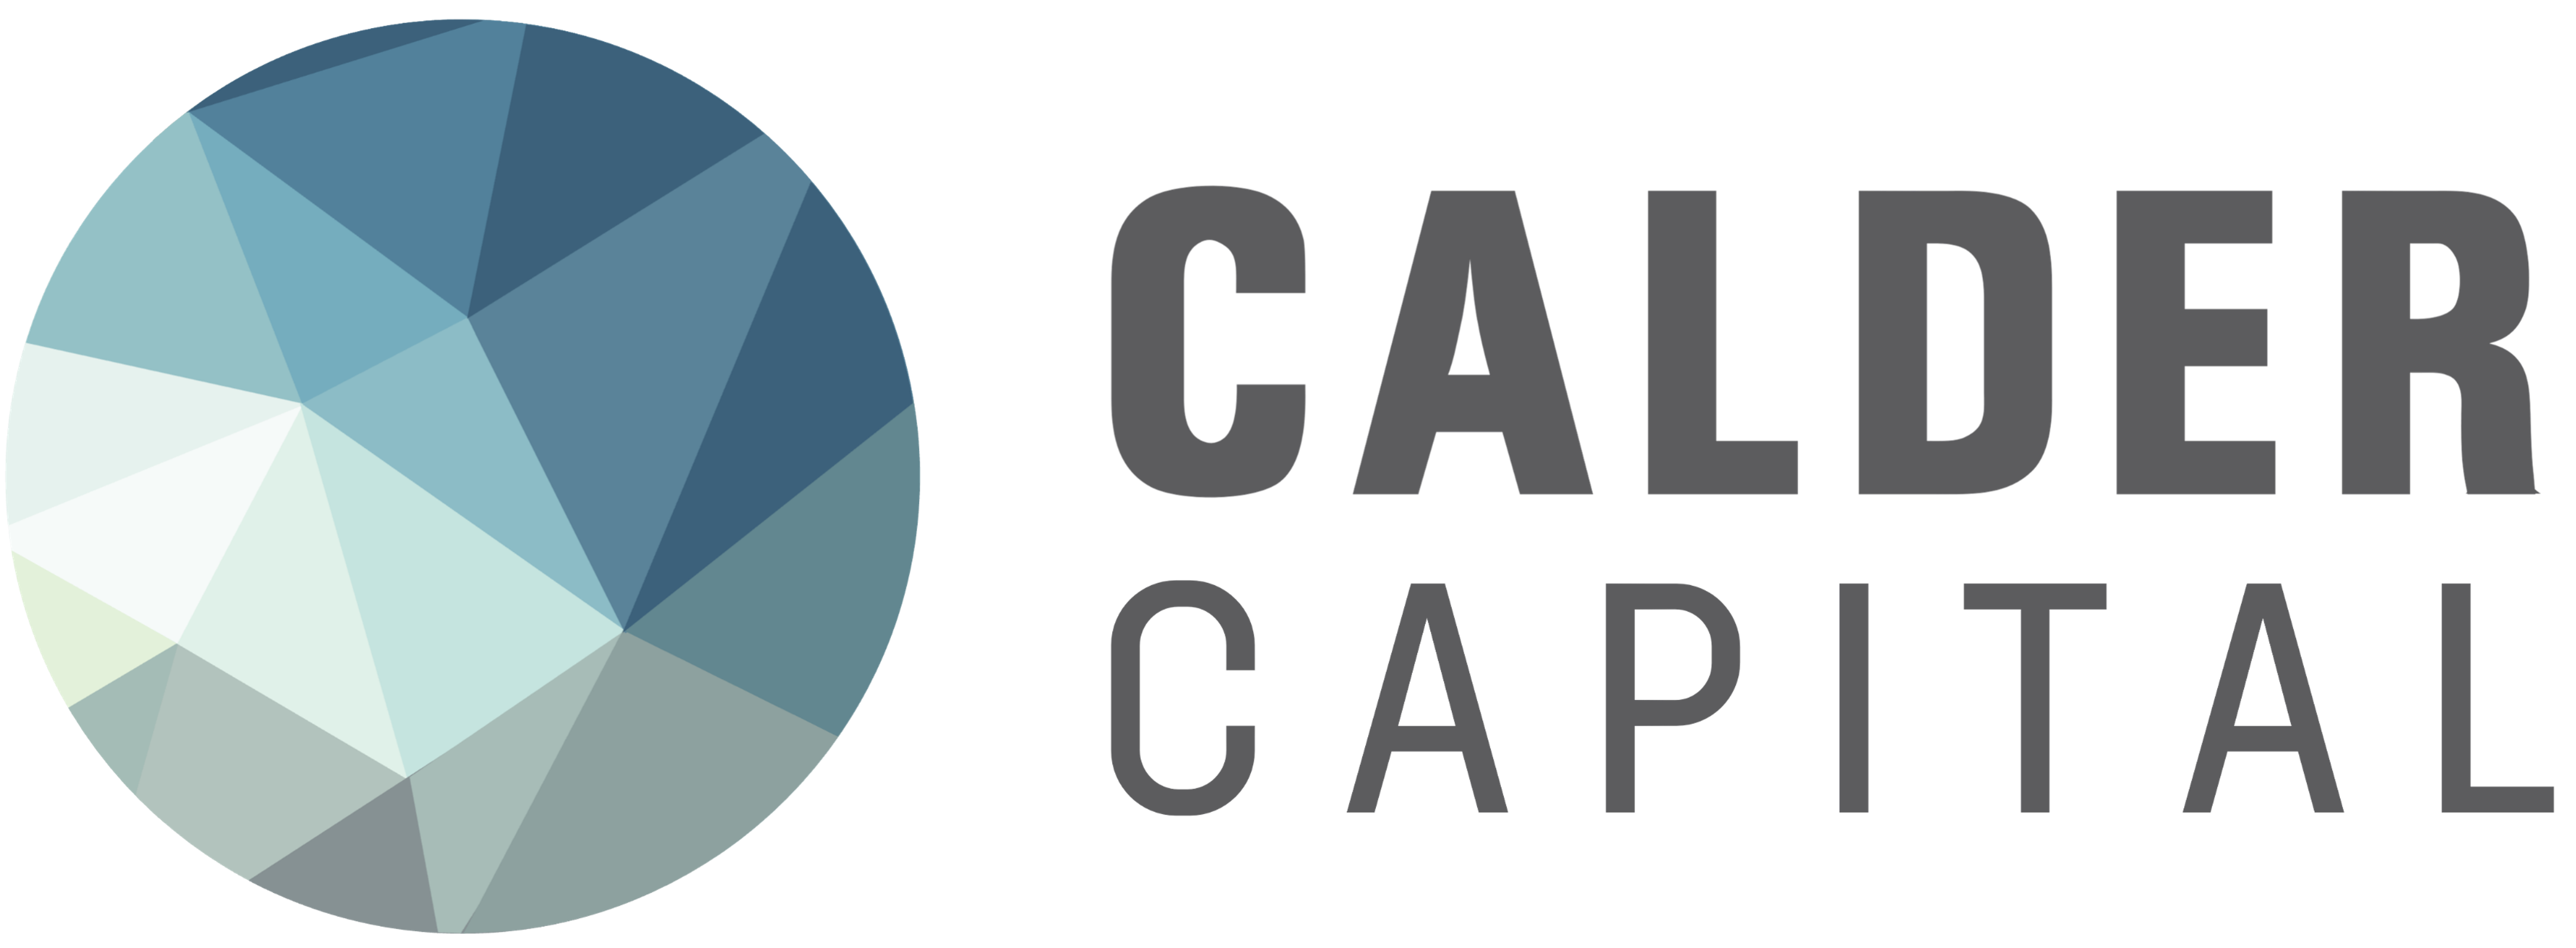 Calder Capital